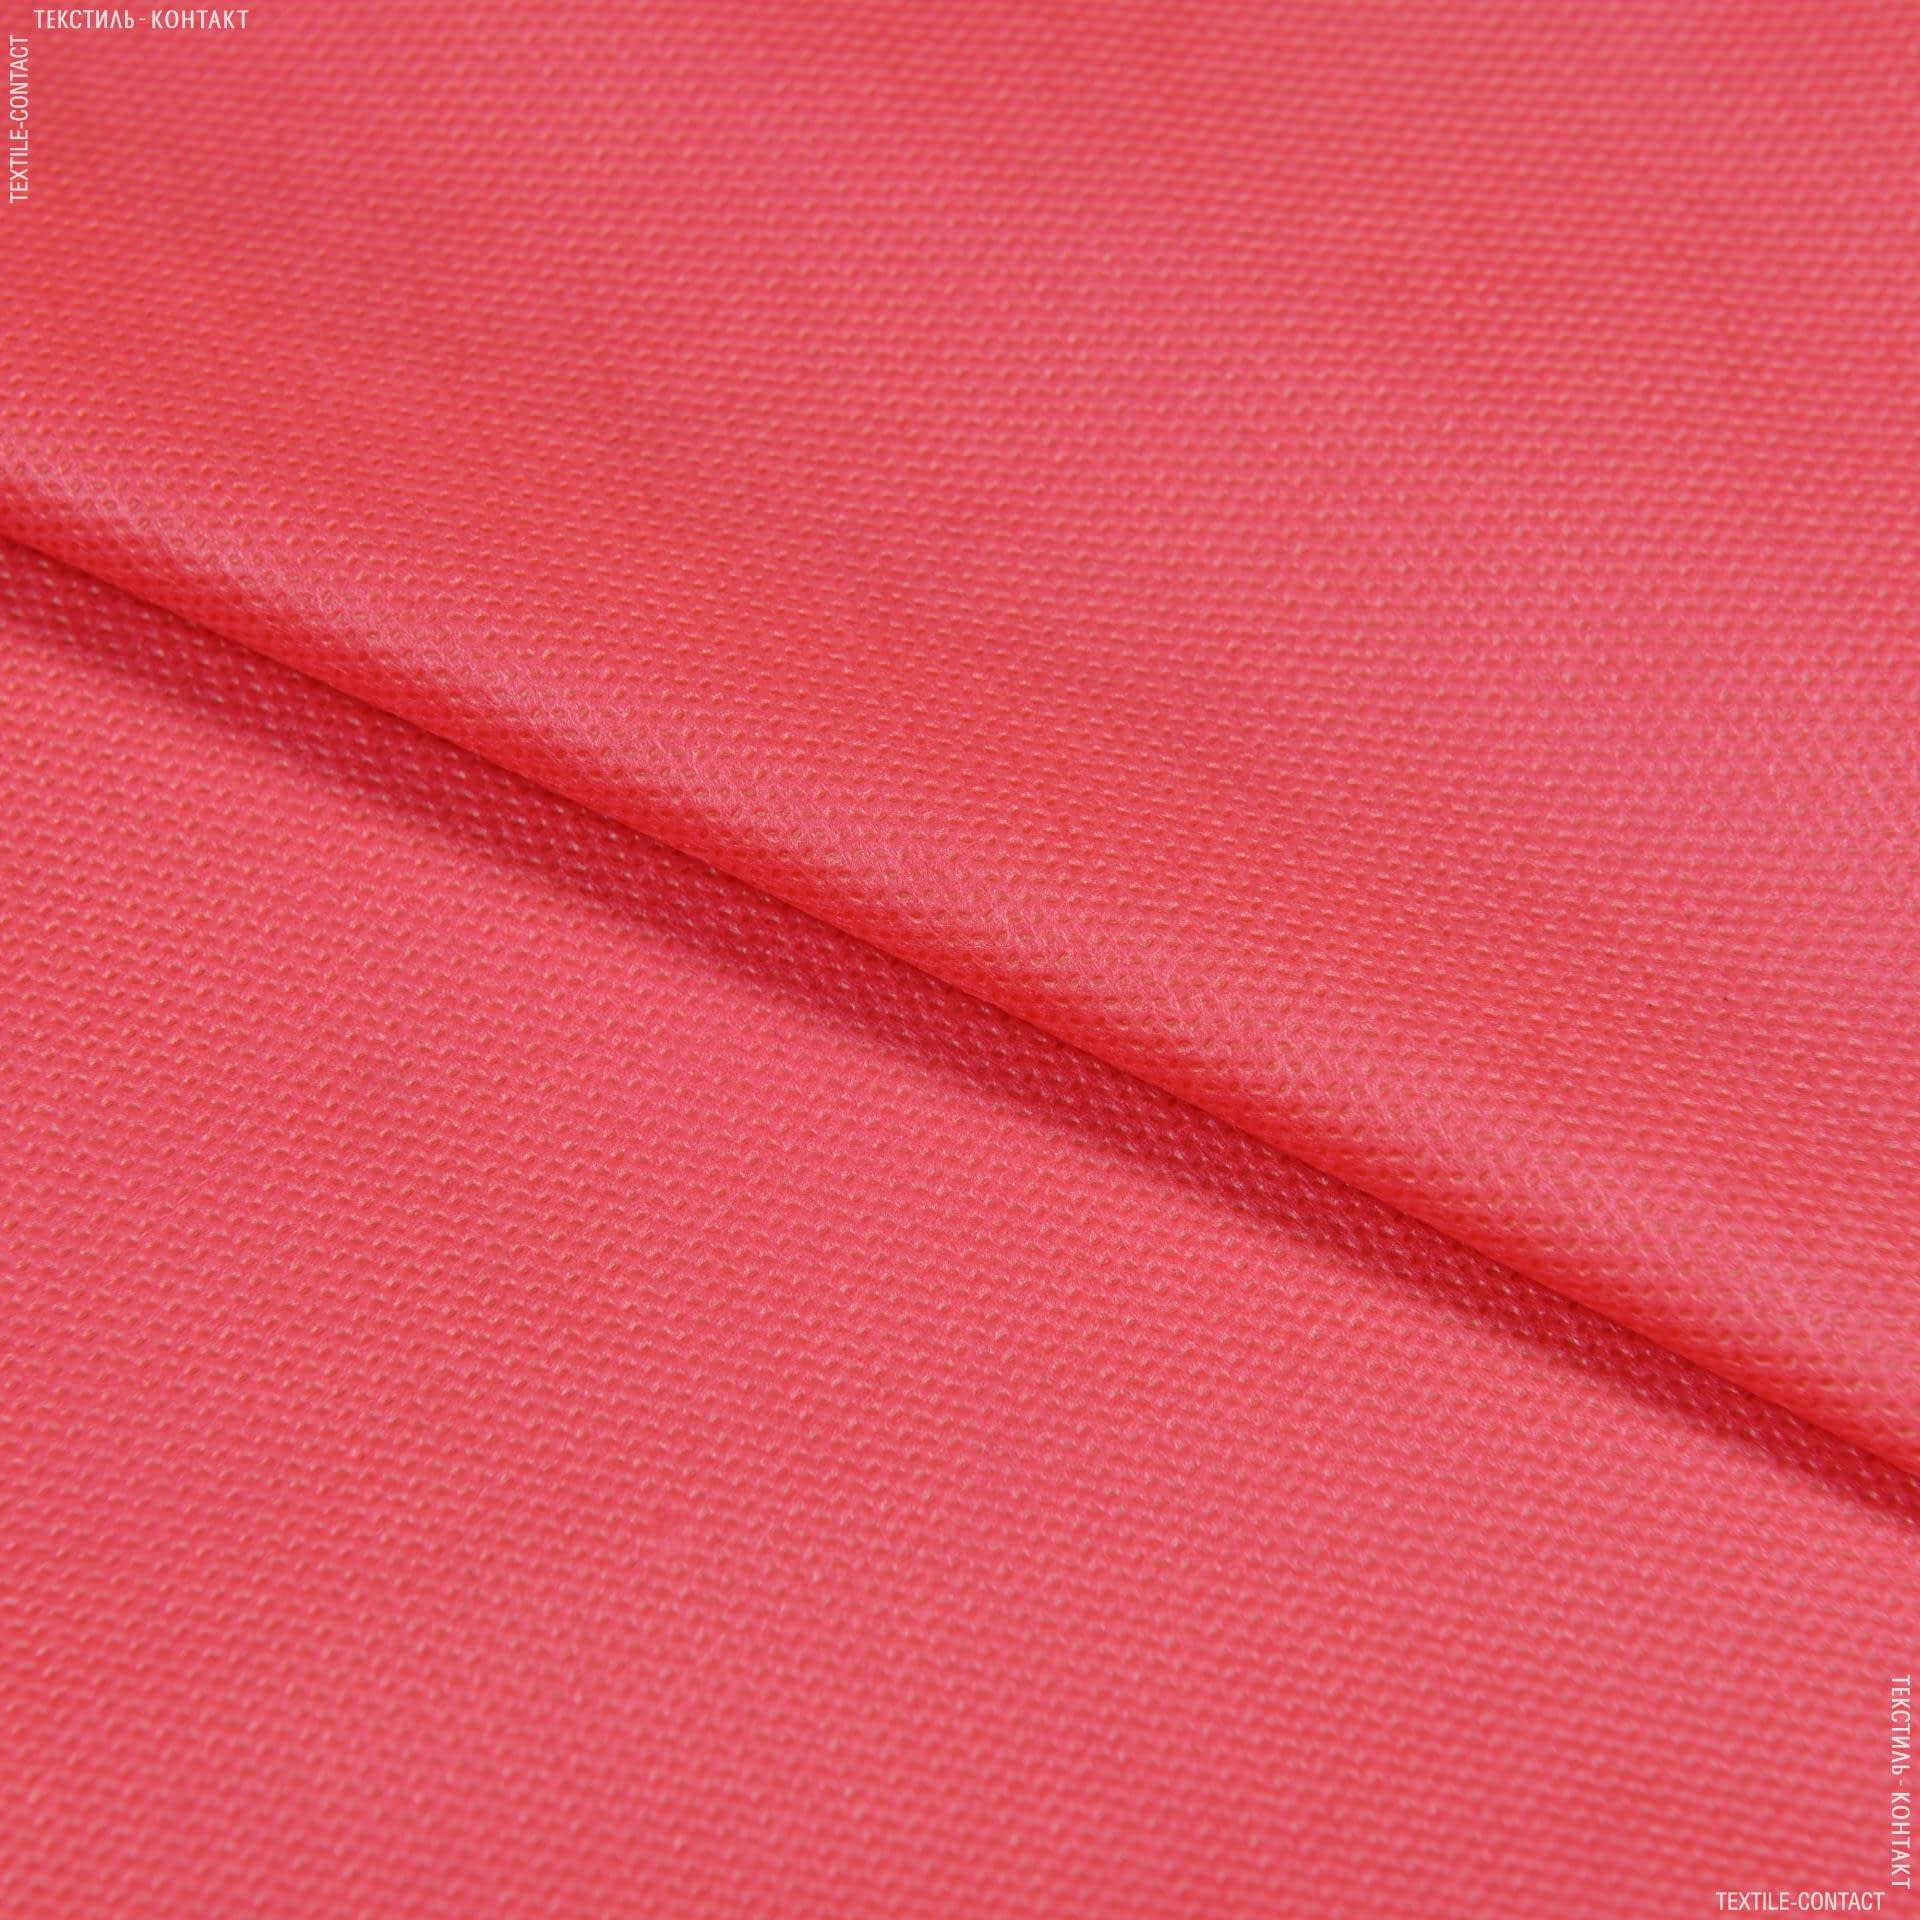 Тканини для сумок - Спанбонд 70g червоний